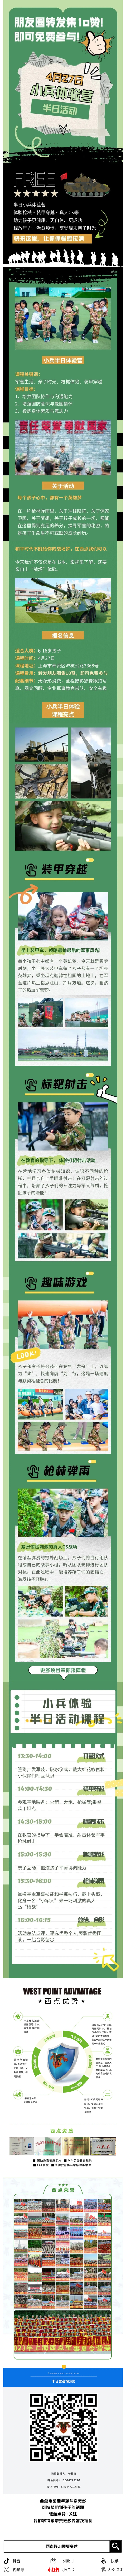 周末去哪儿？！来西点“小兵体验营”，装甲穿越，真人cs，趣味活动……www.xdxialingying.com